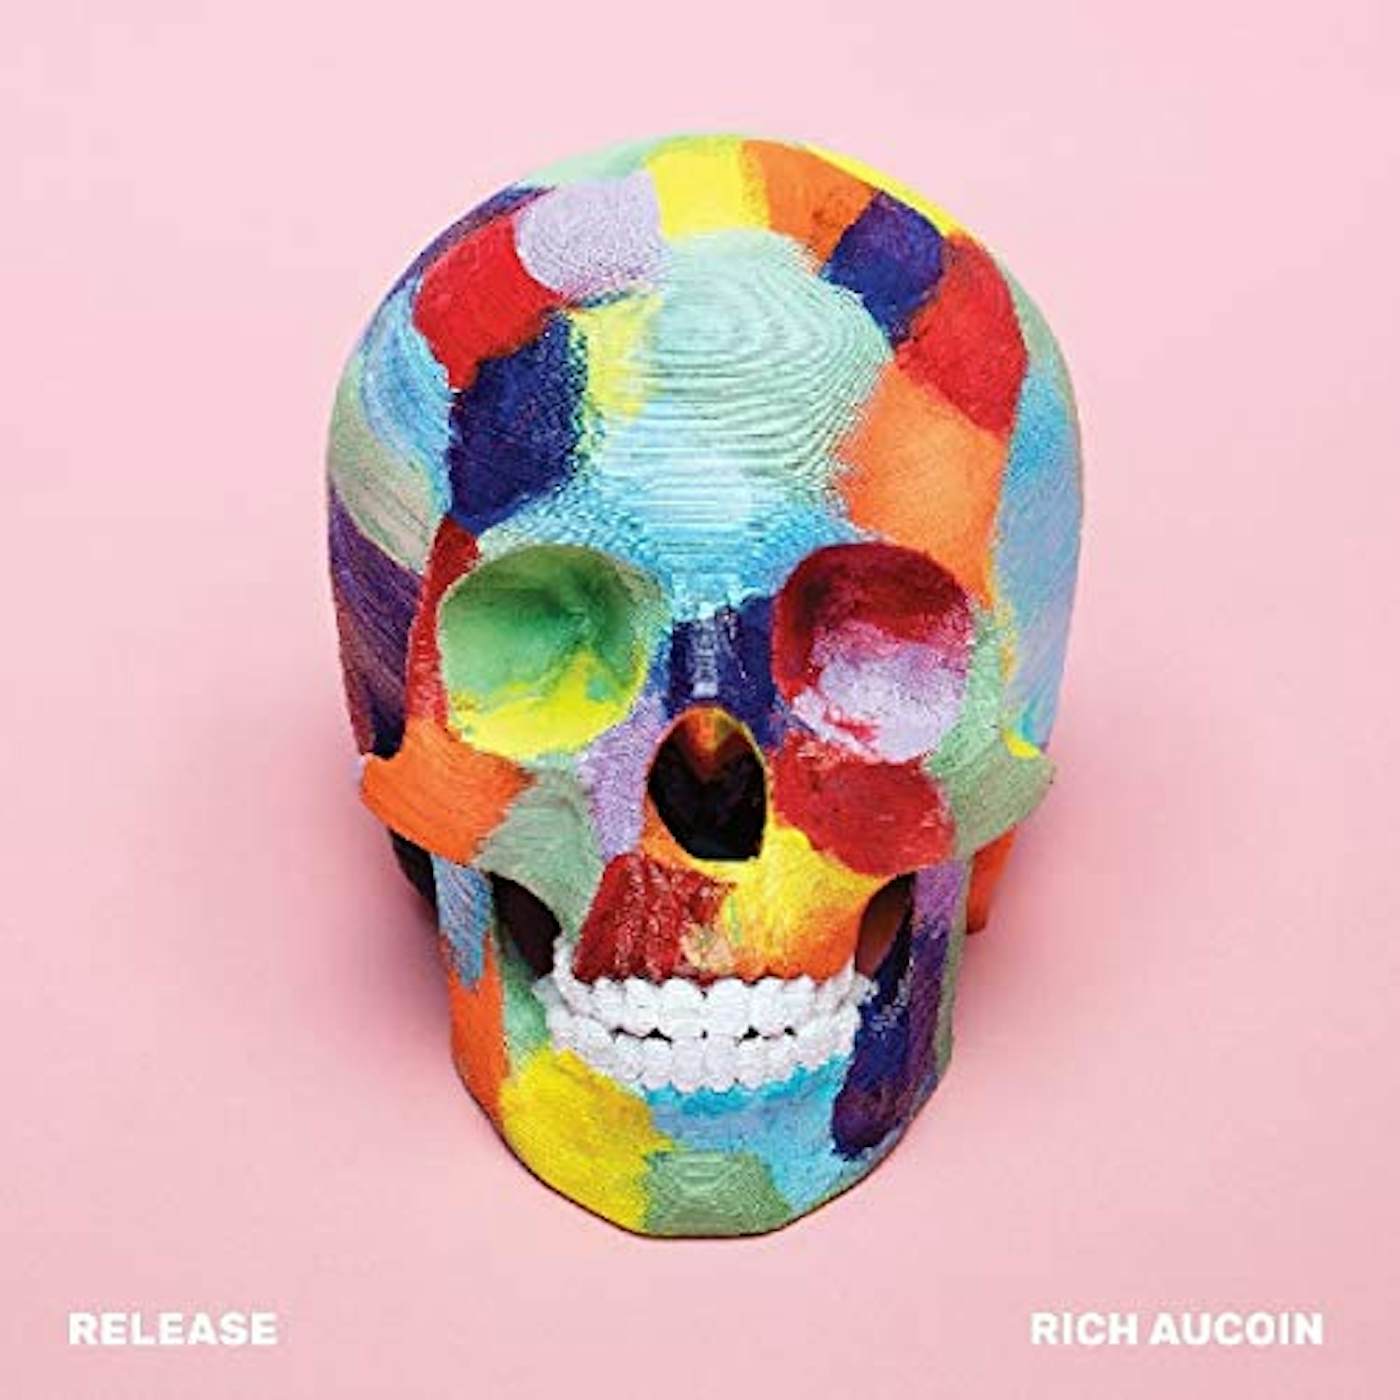 Rich Aucoin RELEASE CD